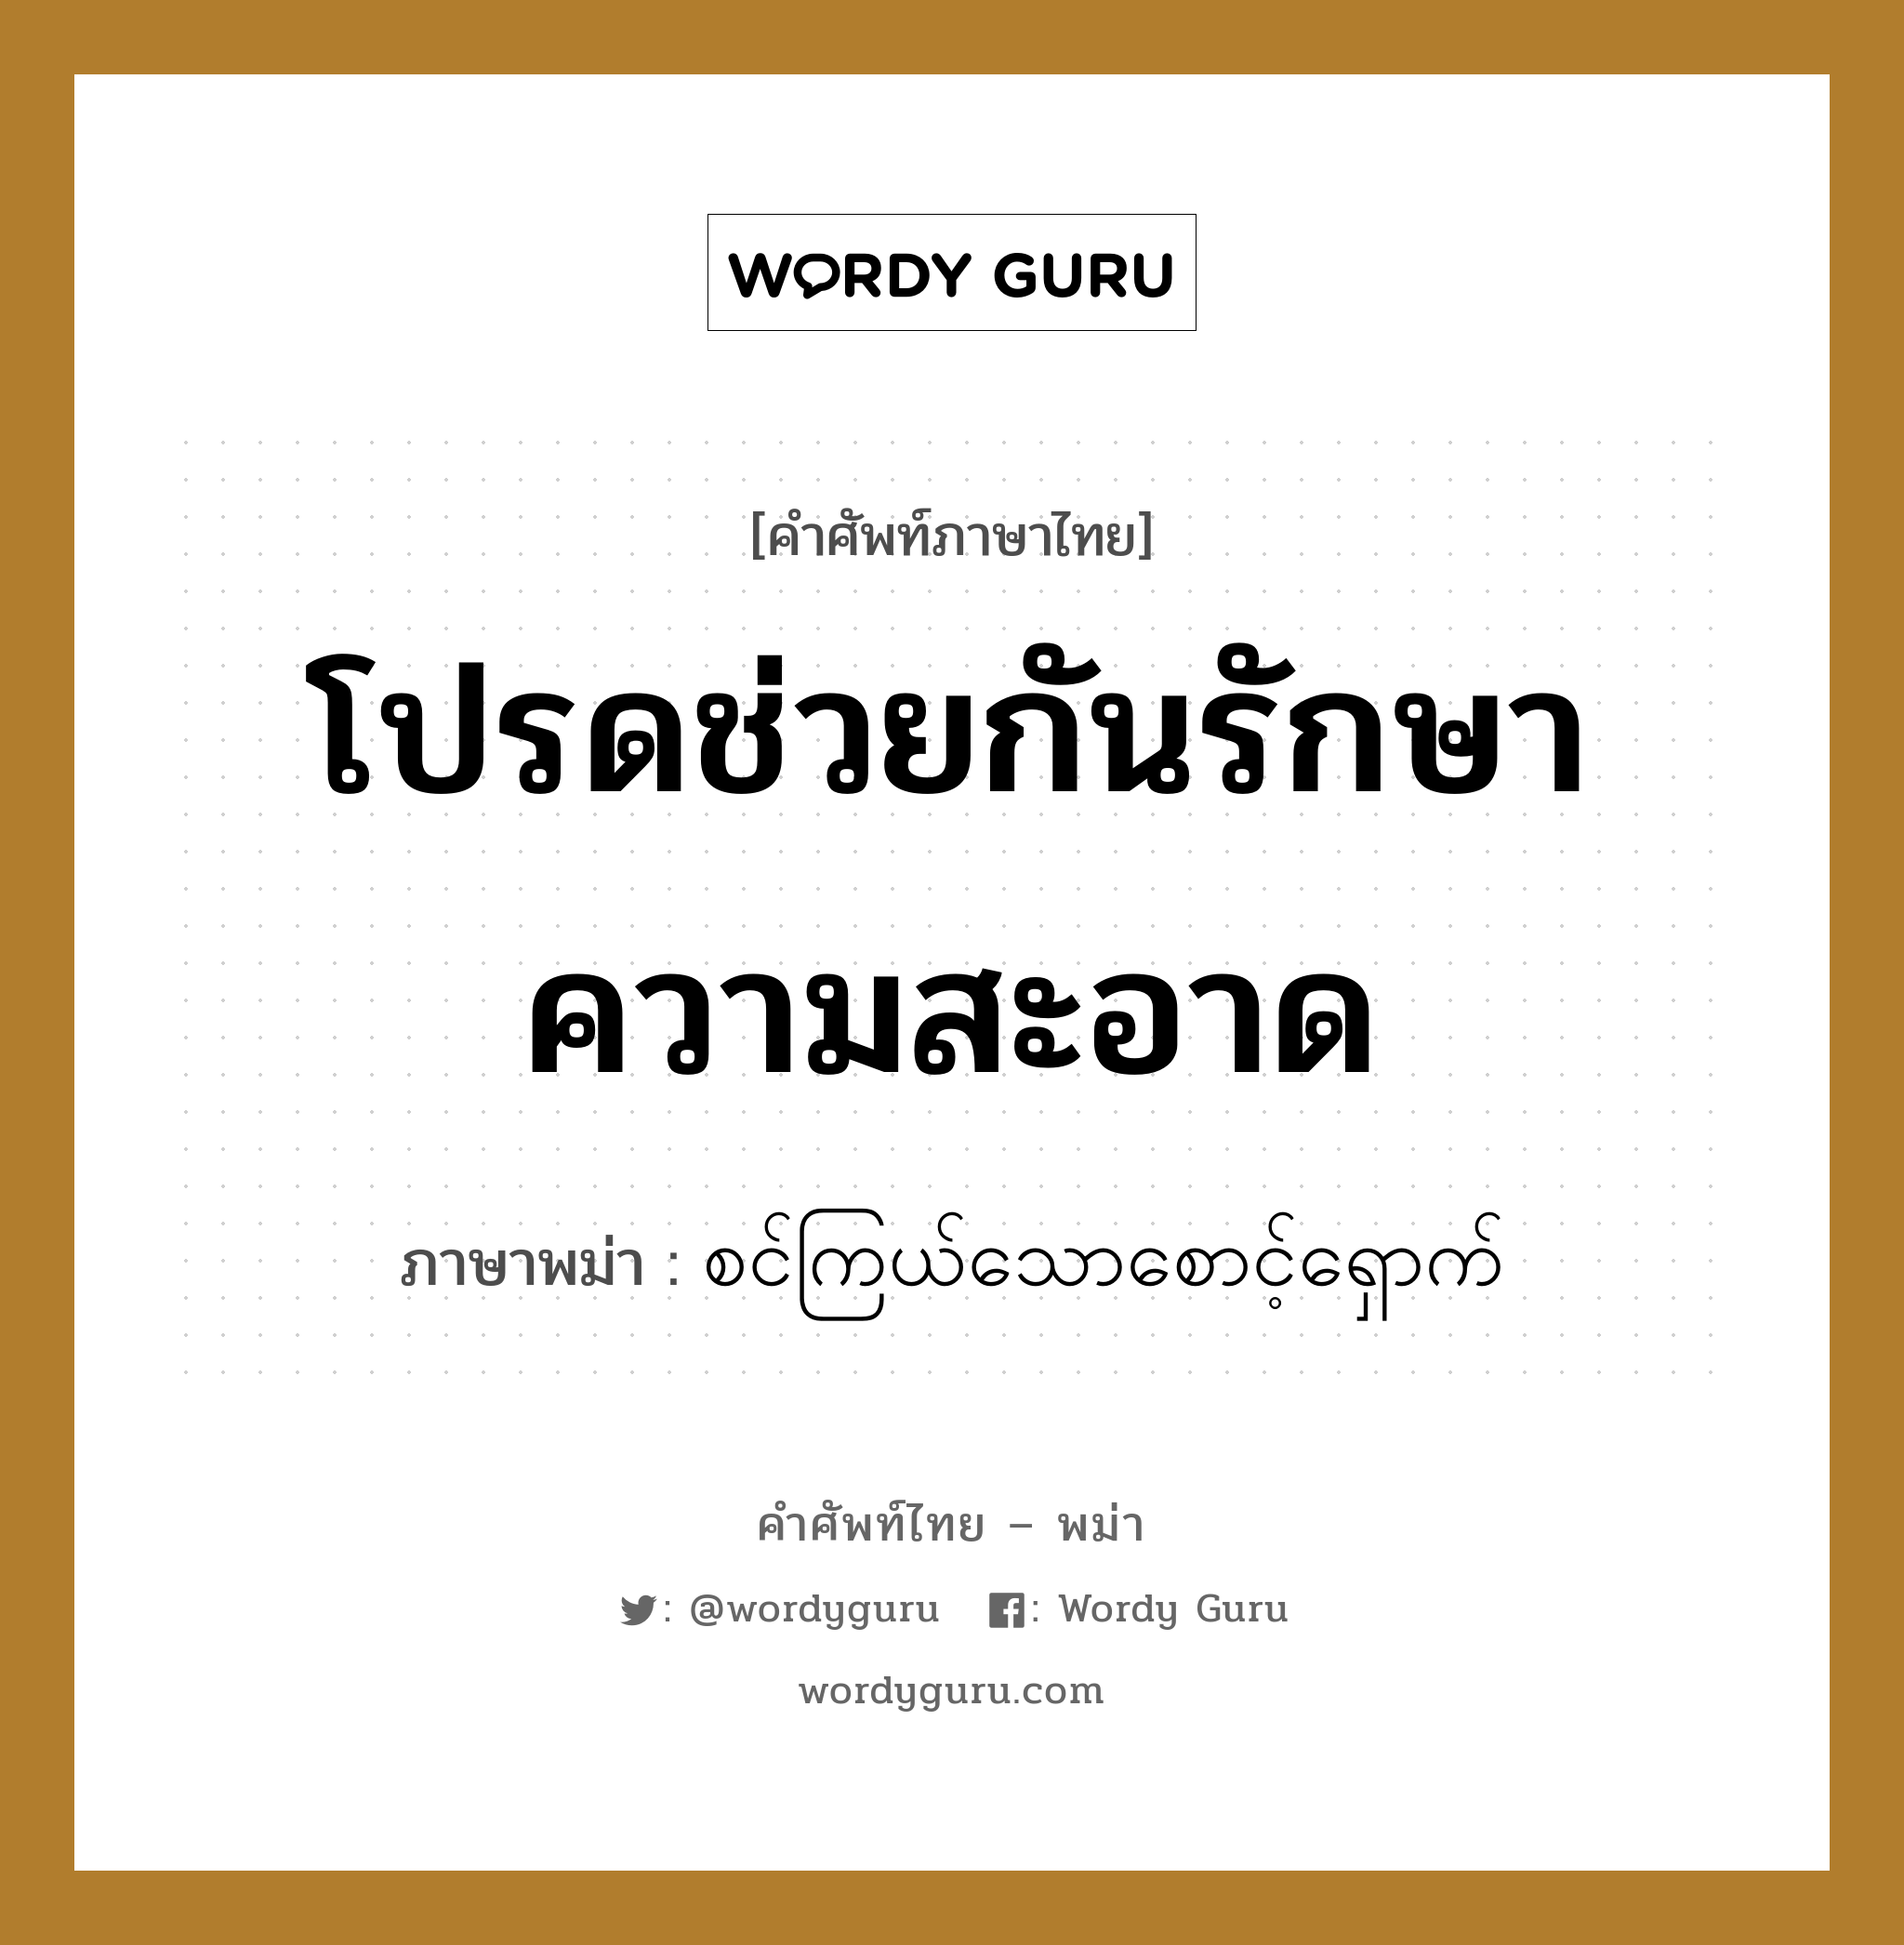 စင်ကြယ်သောစောင့်ရှောက် ภาษาไทย?, คำศัพท์ภาษาไทย - พม่า စင်ကြယ်သောစောင့်ရှောက် ภาษาพม่า โปรดช่วยกันรักษาความสะอาด หมวด ทั่วไป หมวด ทั่วไป